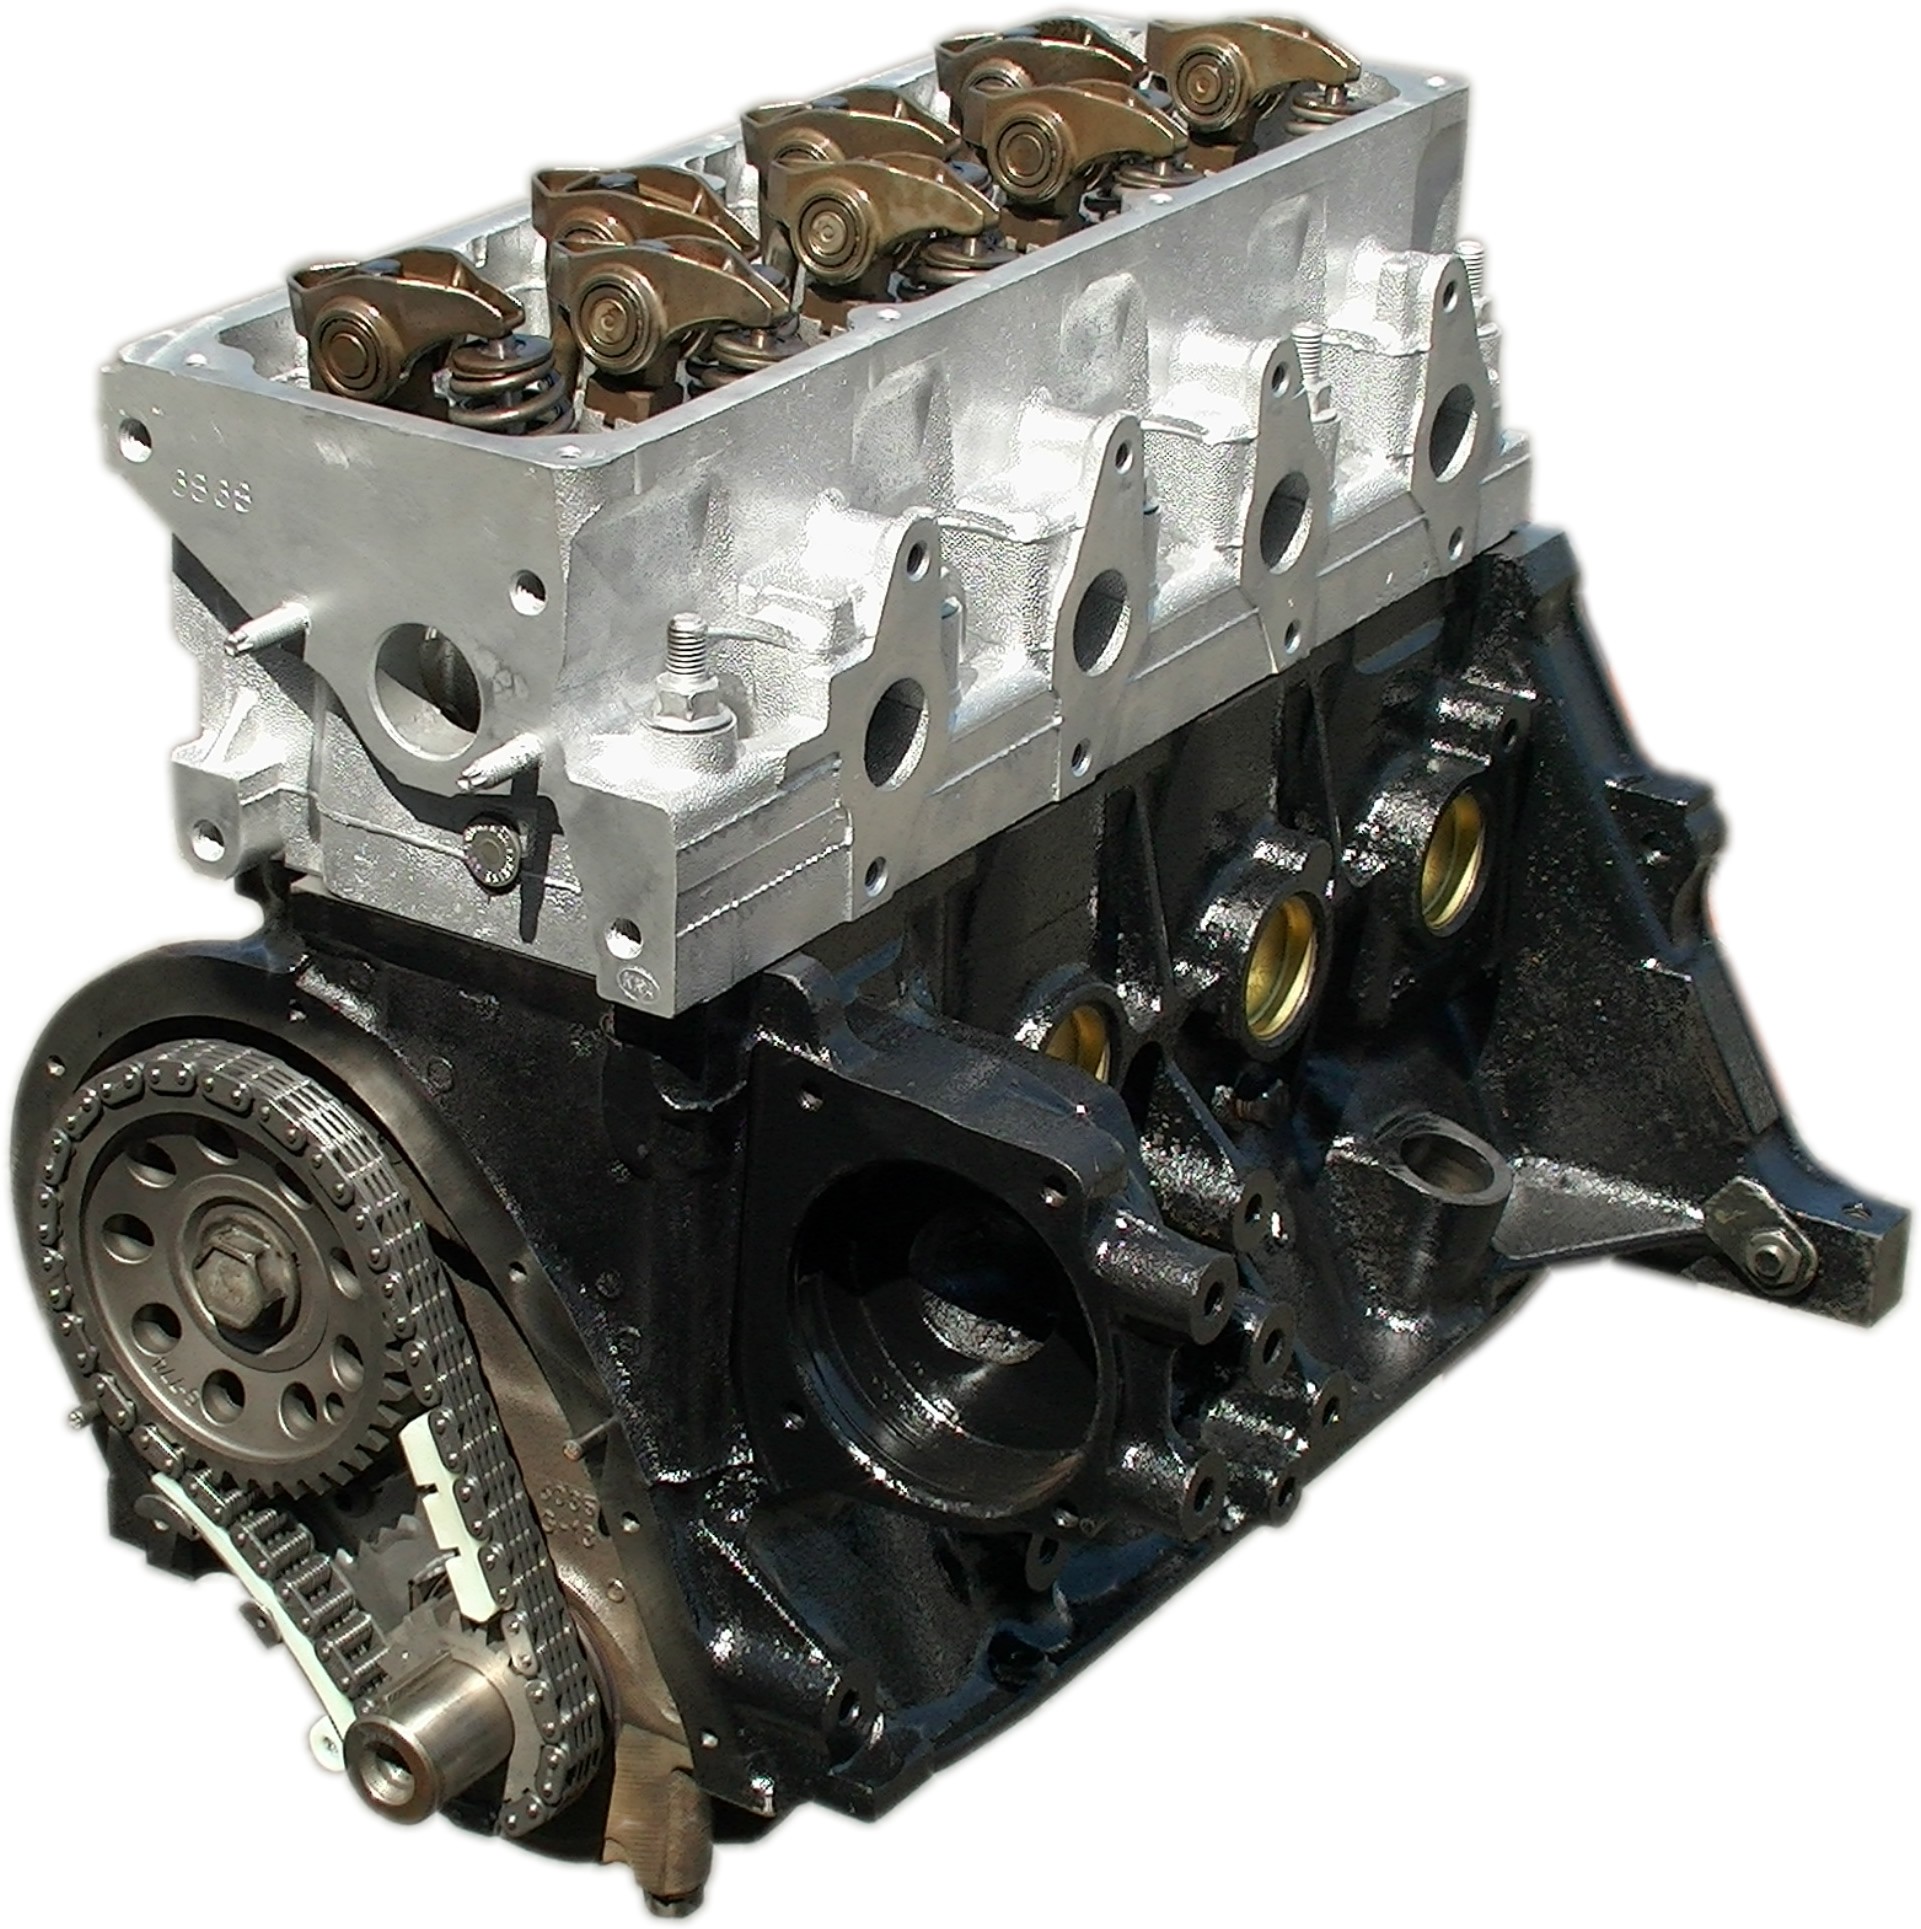 Rebuilt 1999-2003 Chevrolet S10 Pick Up 4Cyl Engine « Kar ... 5sfe engine diagram 